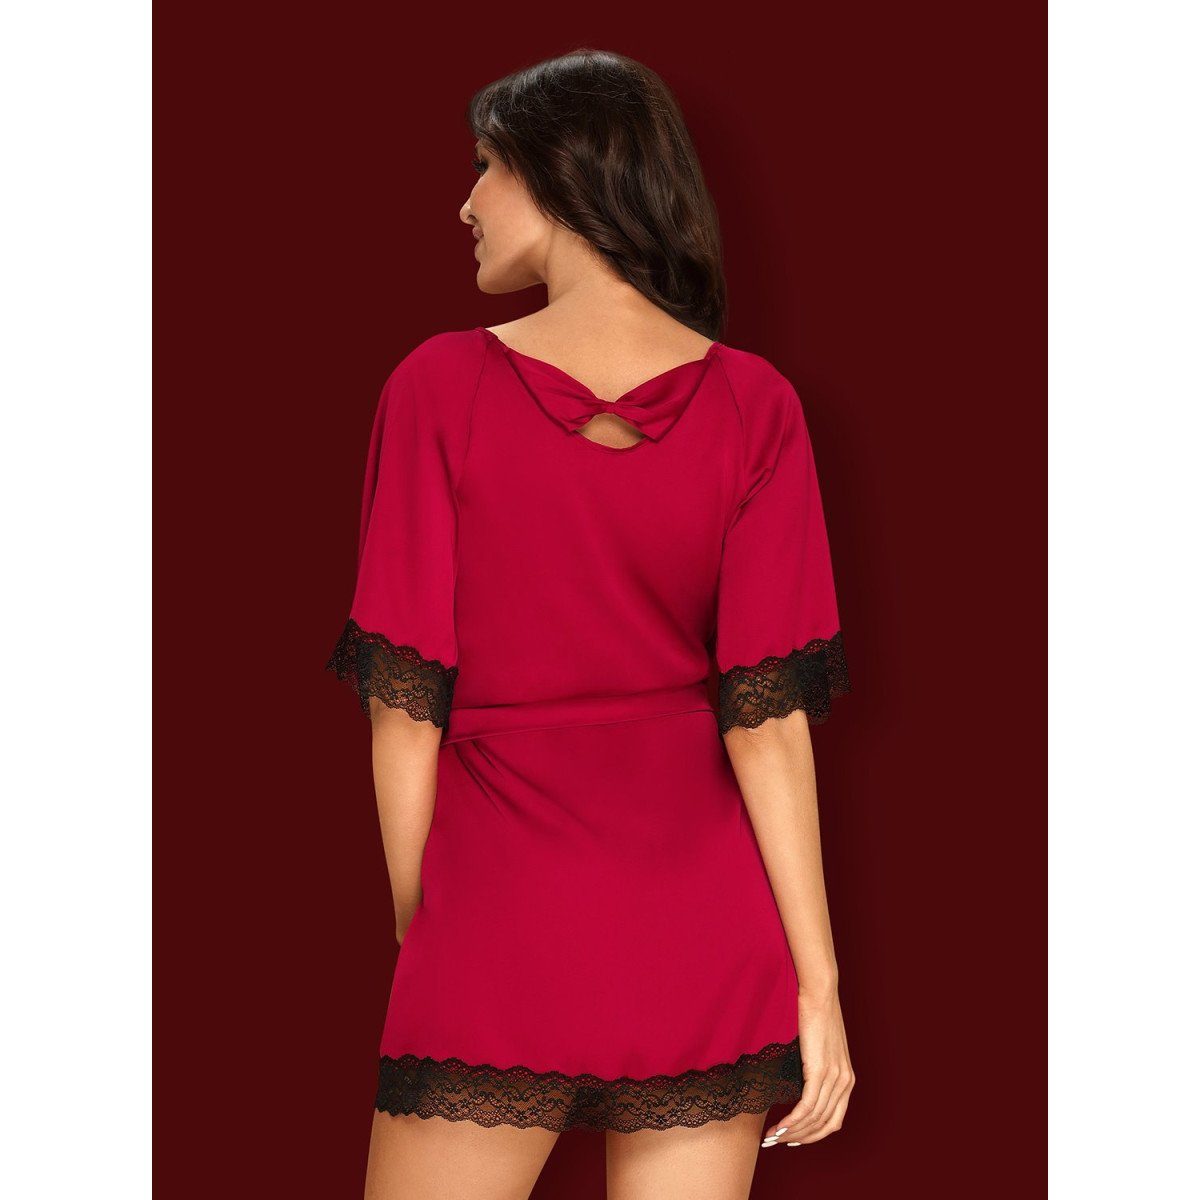 OB - (S/M,XXL) Obsessive Nachthemd Sensuelia red robe